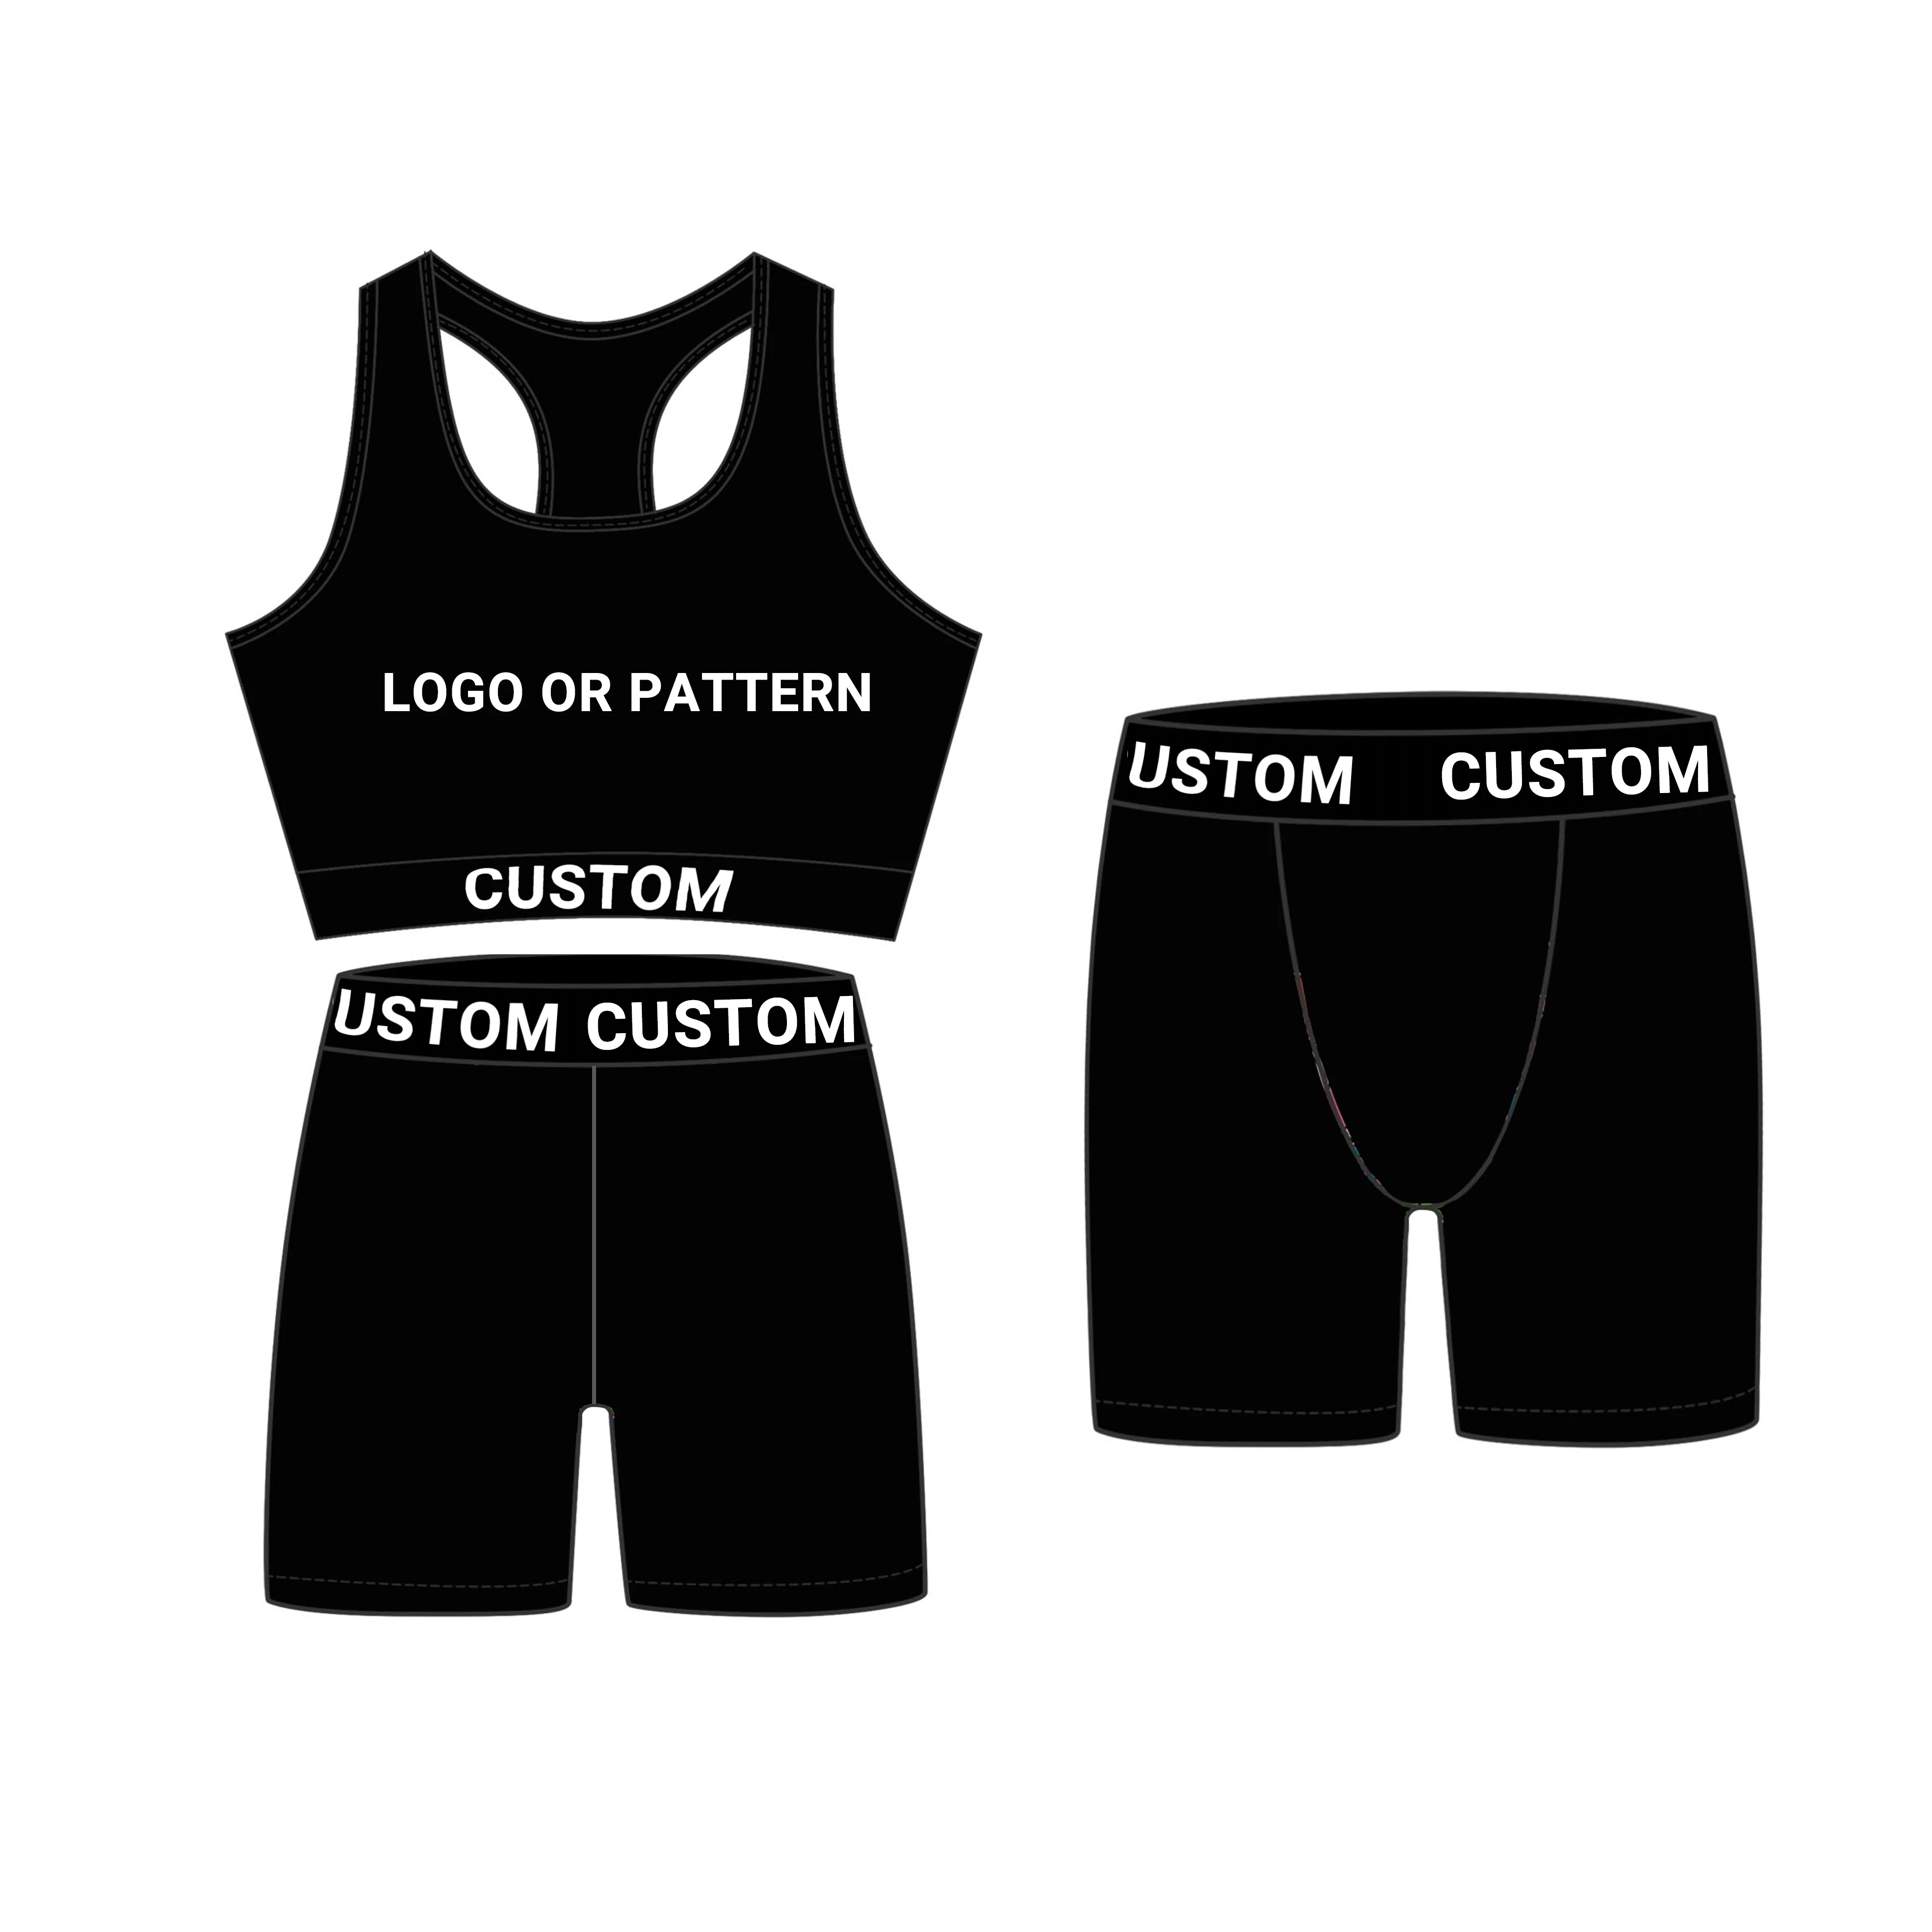 

Factory wholesale custom logo bragas 100% cotton ladies women male mens boxer shorts ethik mens underware boxer briefs, Customized color